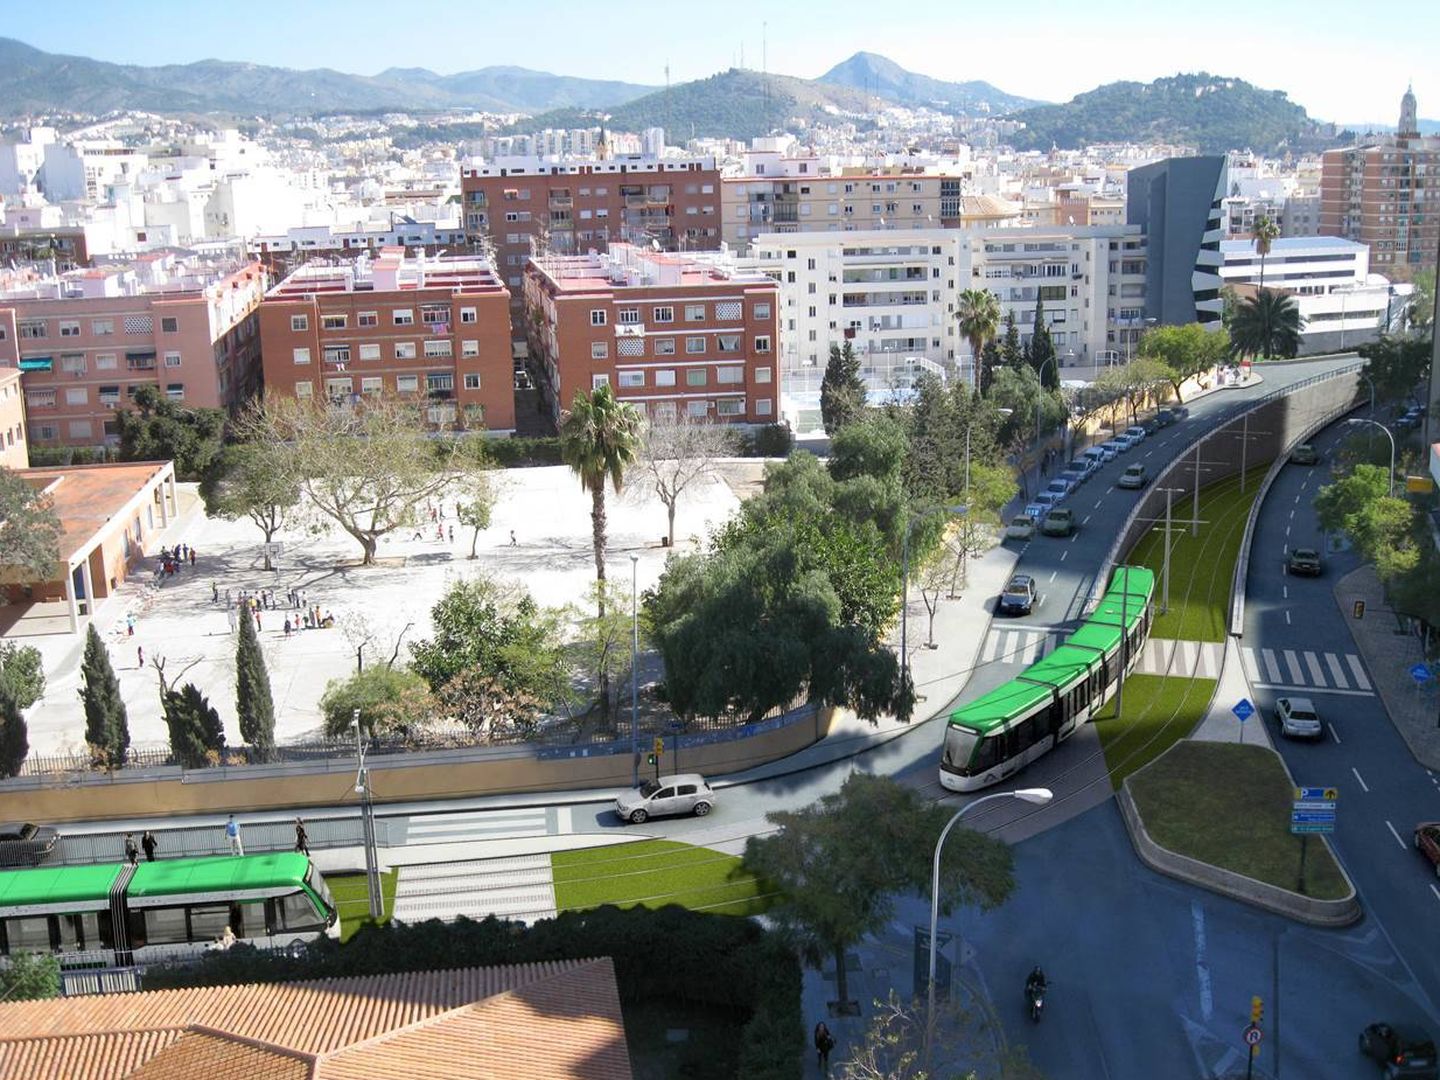 Así circularía el Metro por este tramo de la ciudad. (Junta de Andalucía)